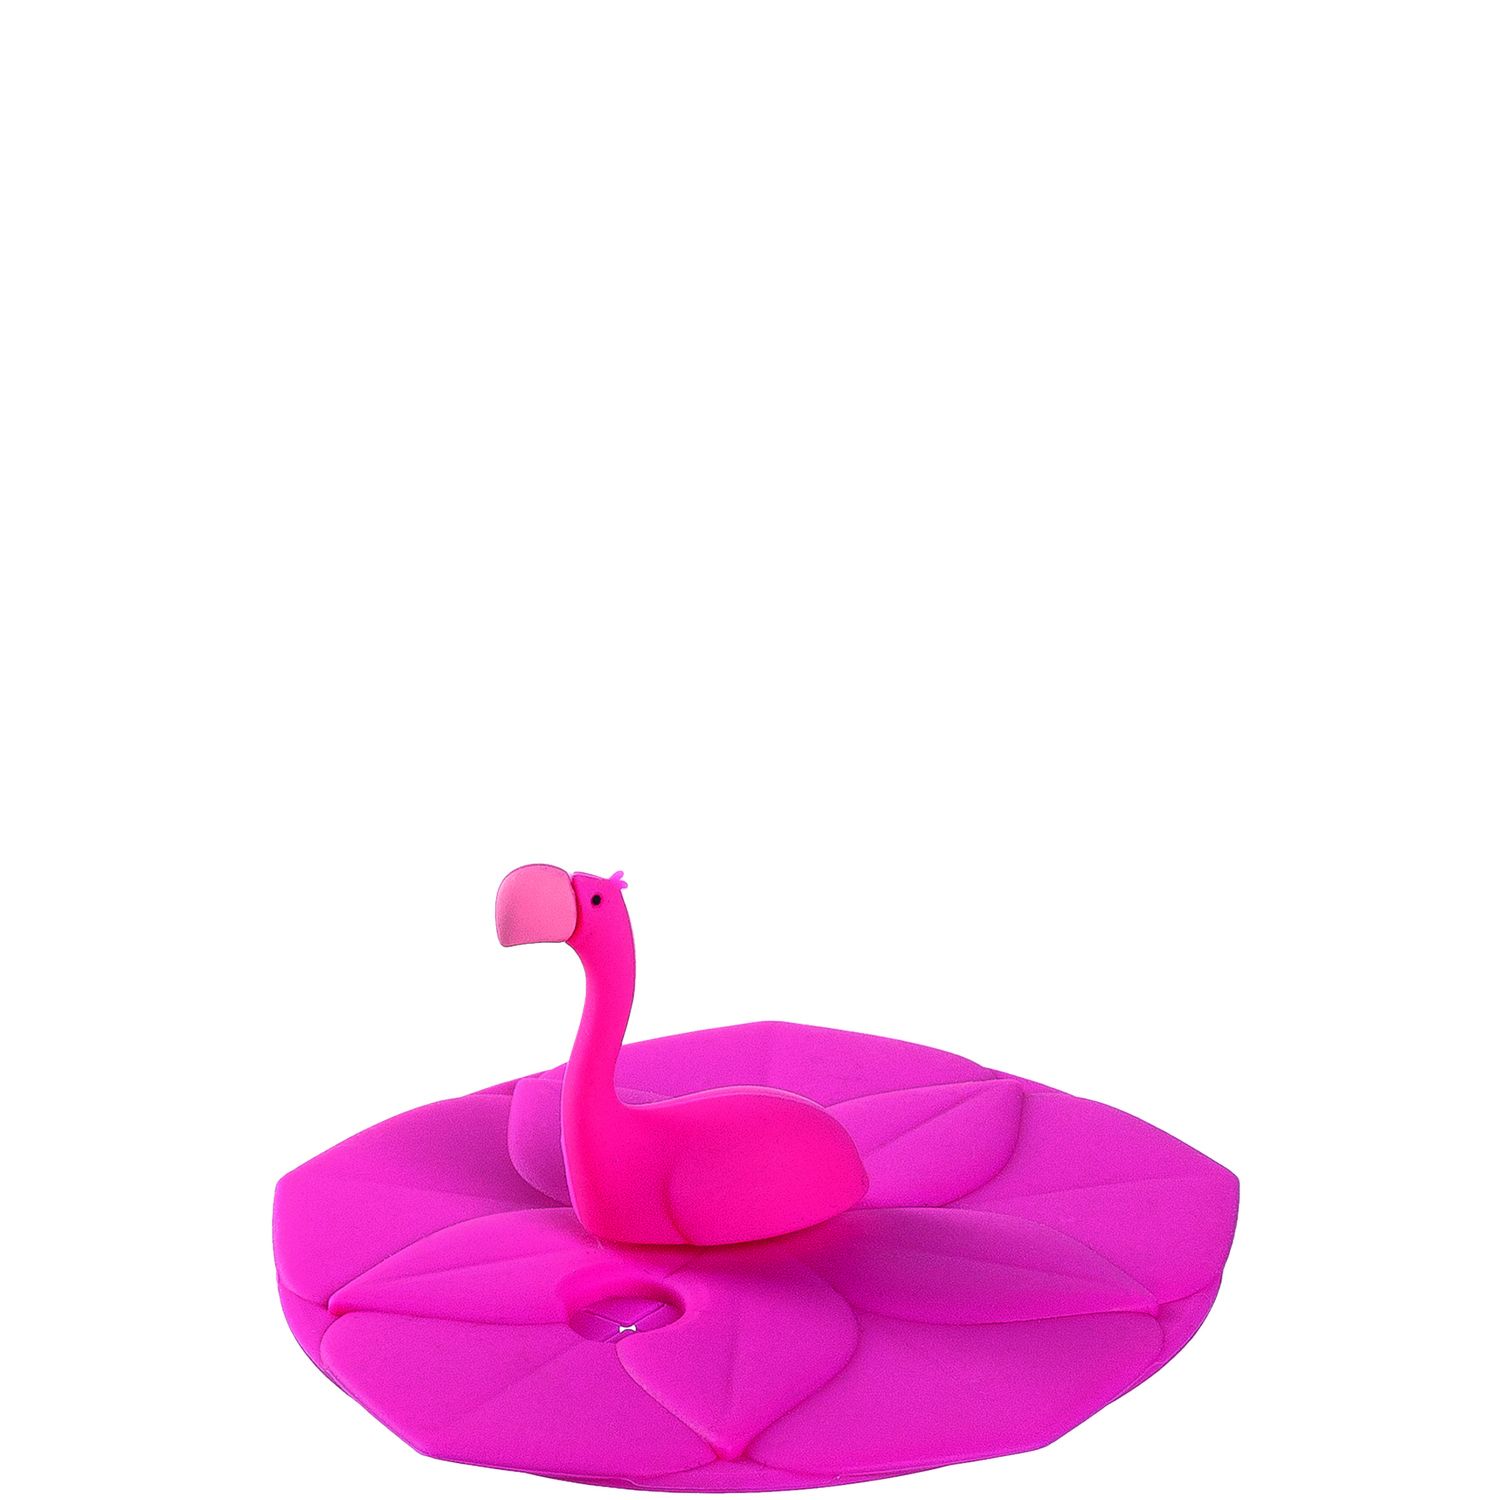 Leonardo Deckel Bambini Flamingo